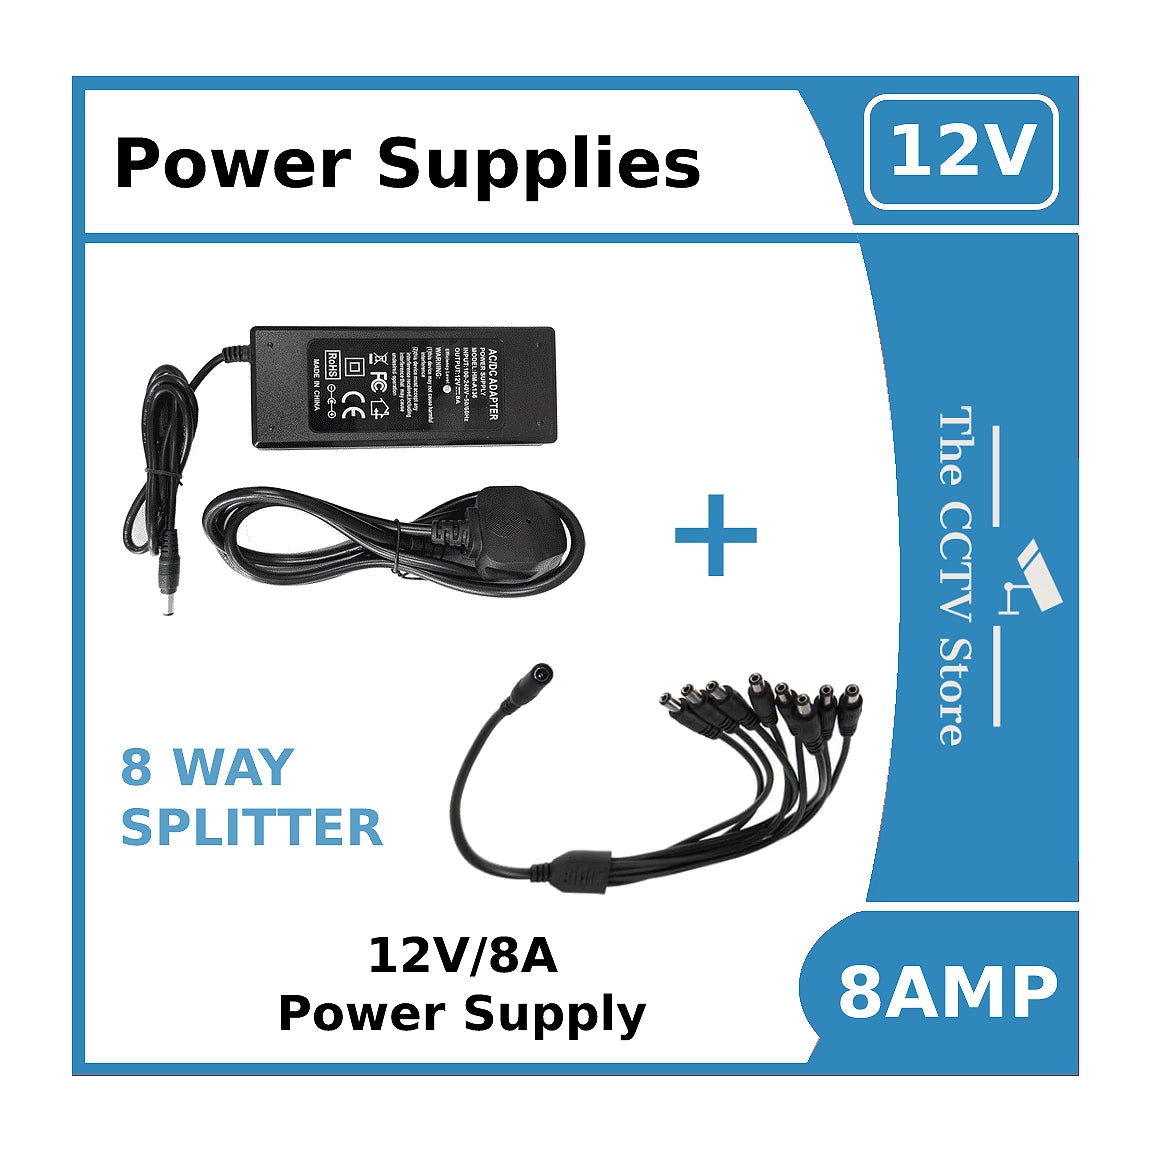 Power Supply 12V/8A for ColorVu CCTV Cameras -12vDC Power Supply 8amp